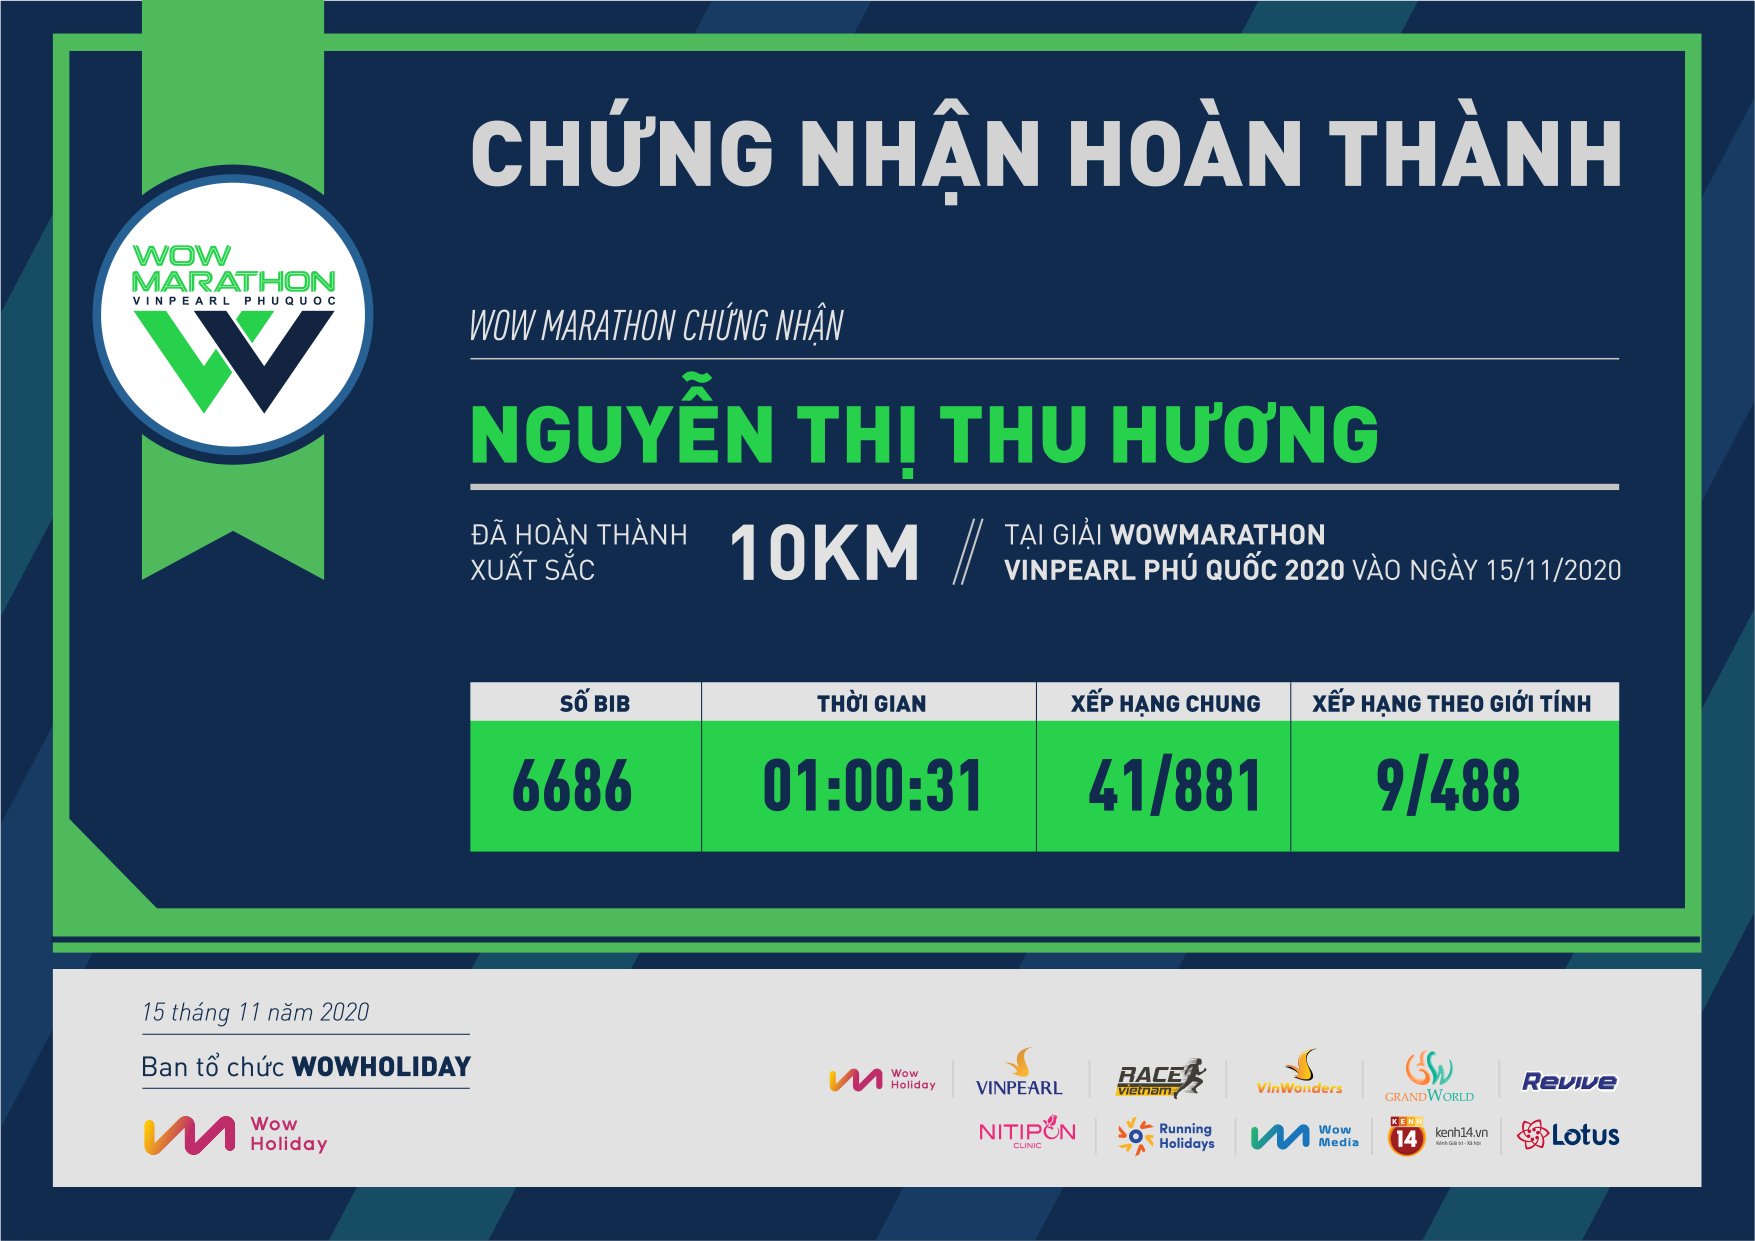 6686 - Nguyễn Thị Thu Hương